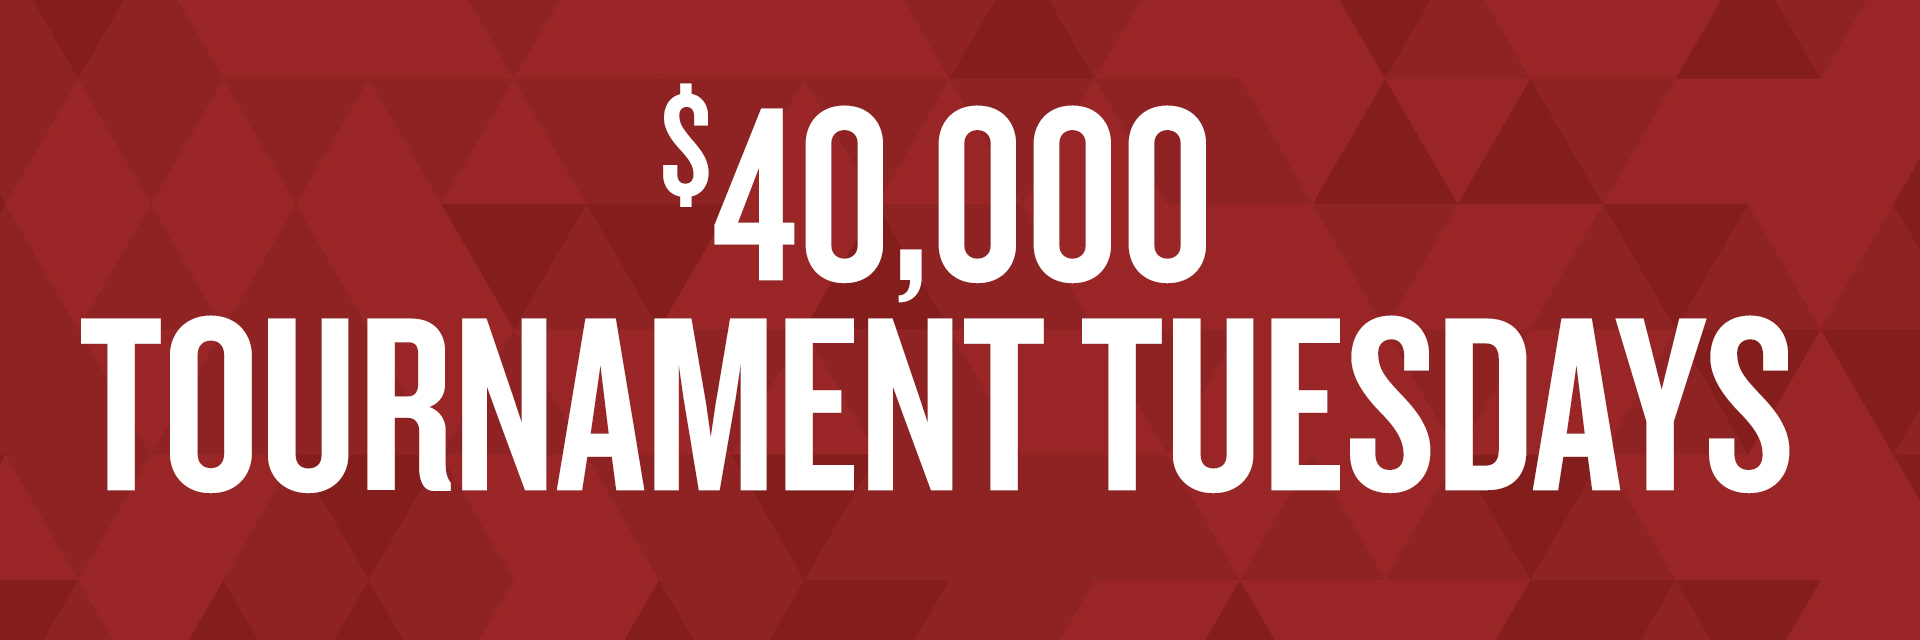 $40,000 Tournament Tuesdays